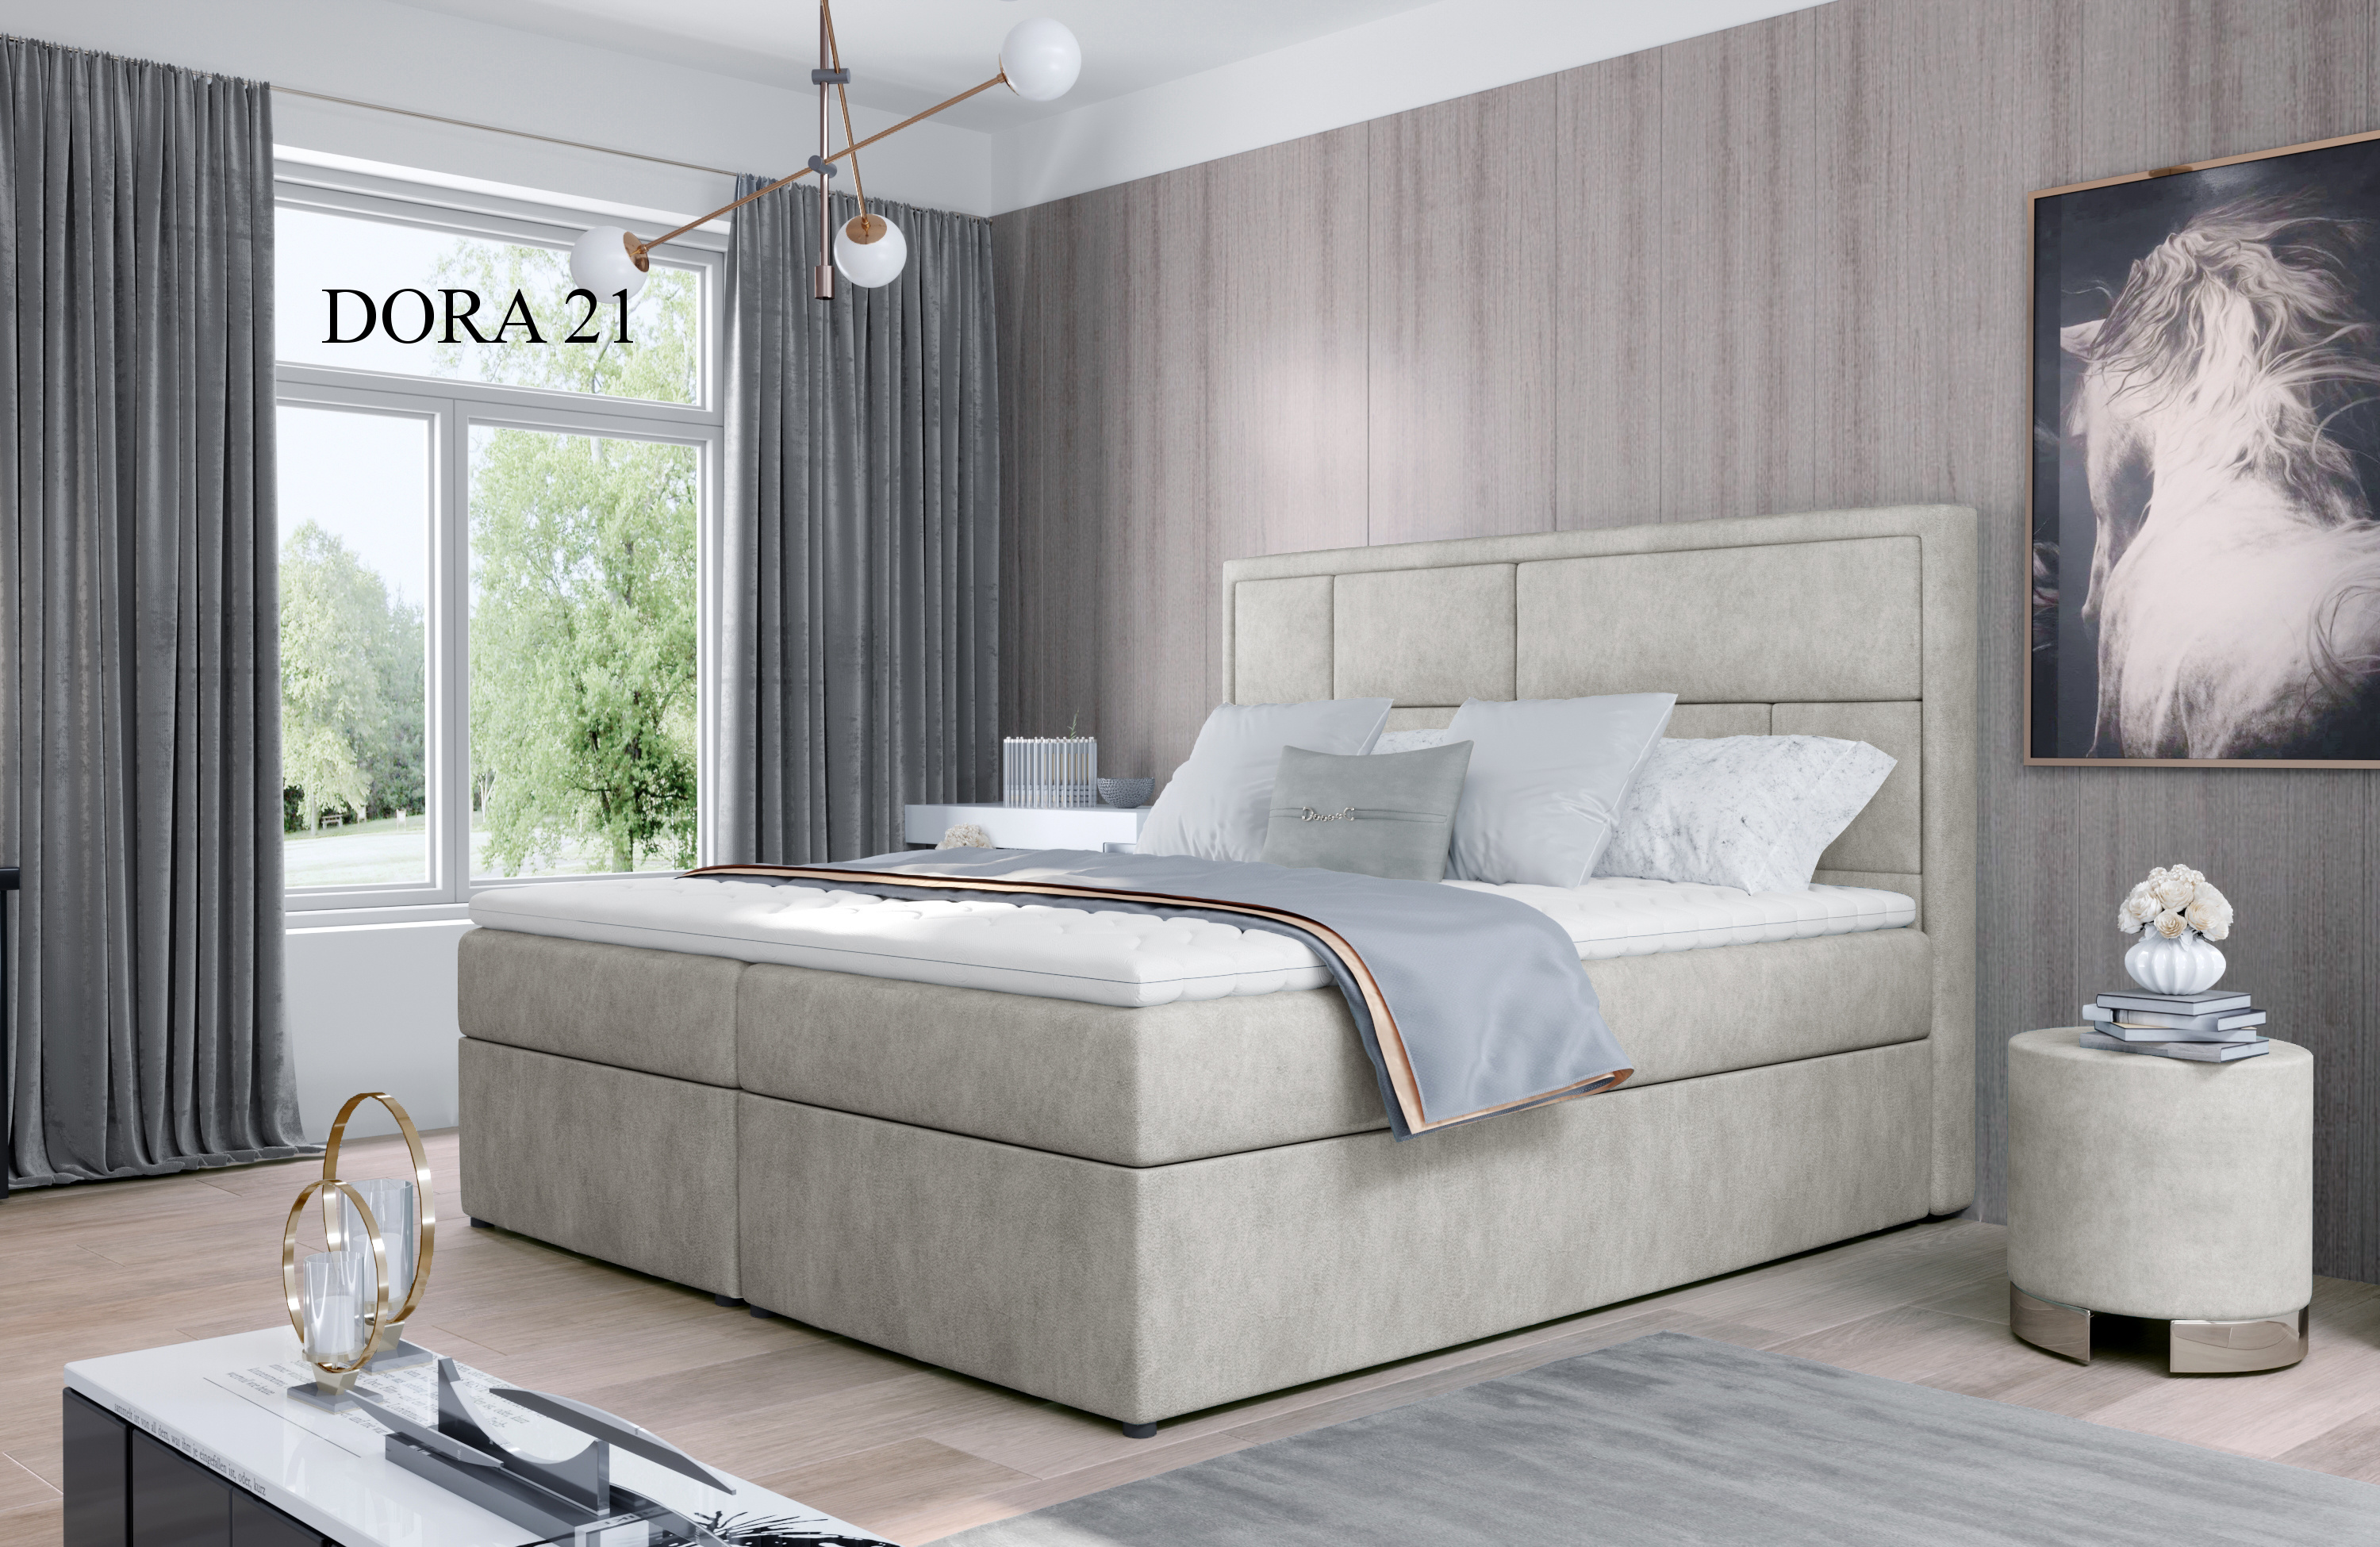 Čalouněná postel MERON Boxsprings 140 x 200 cm Provedení: Dora 21